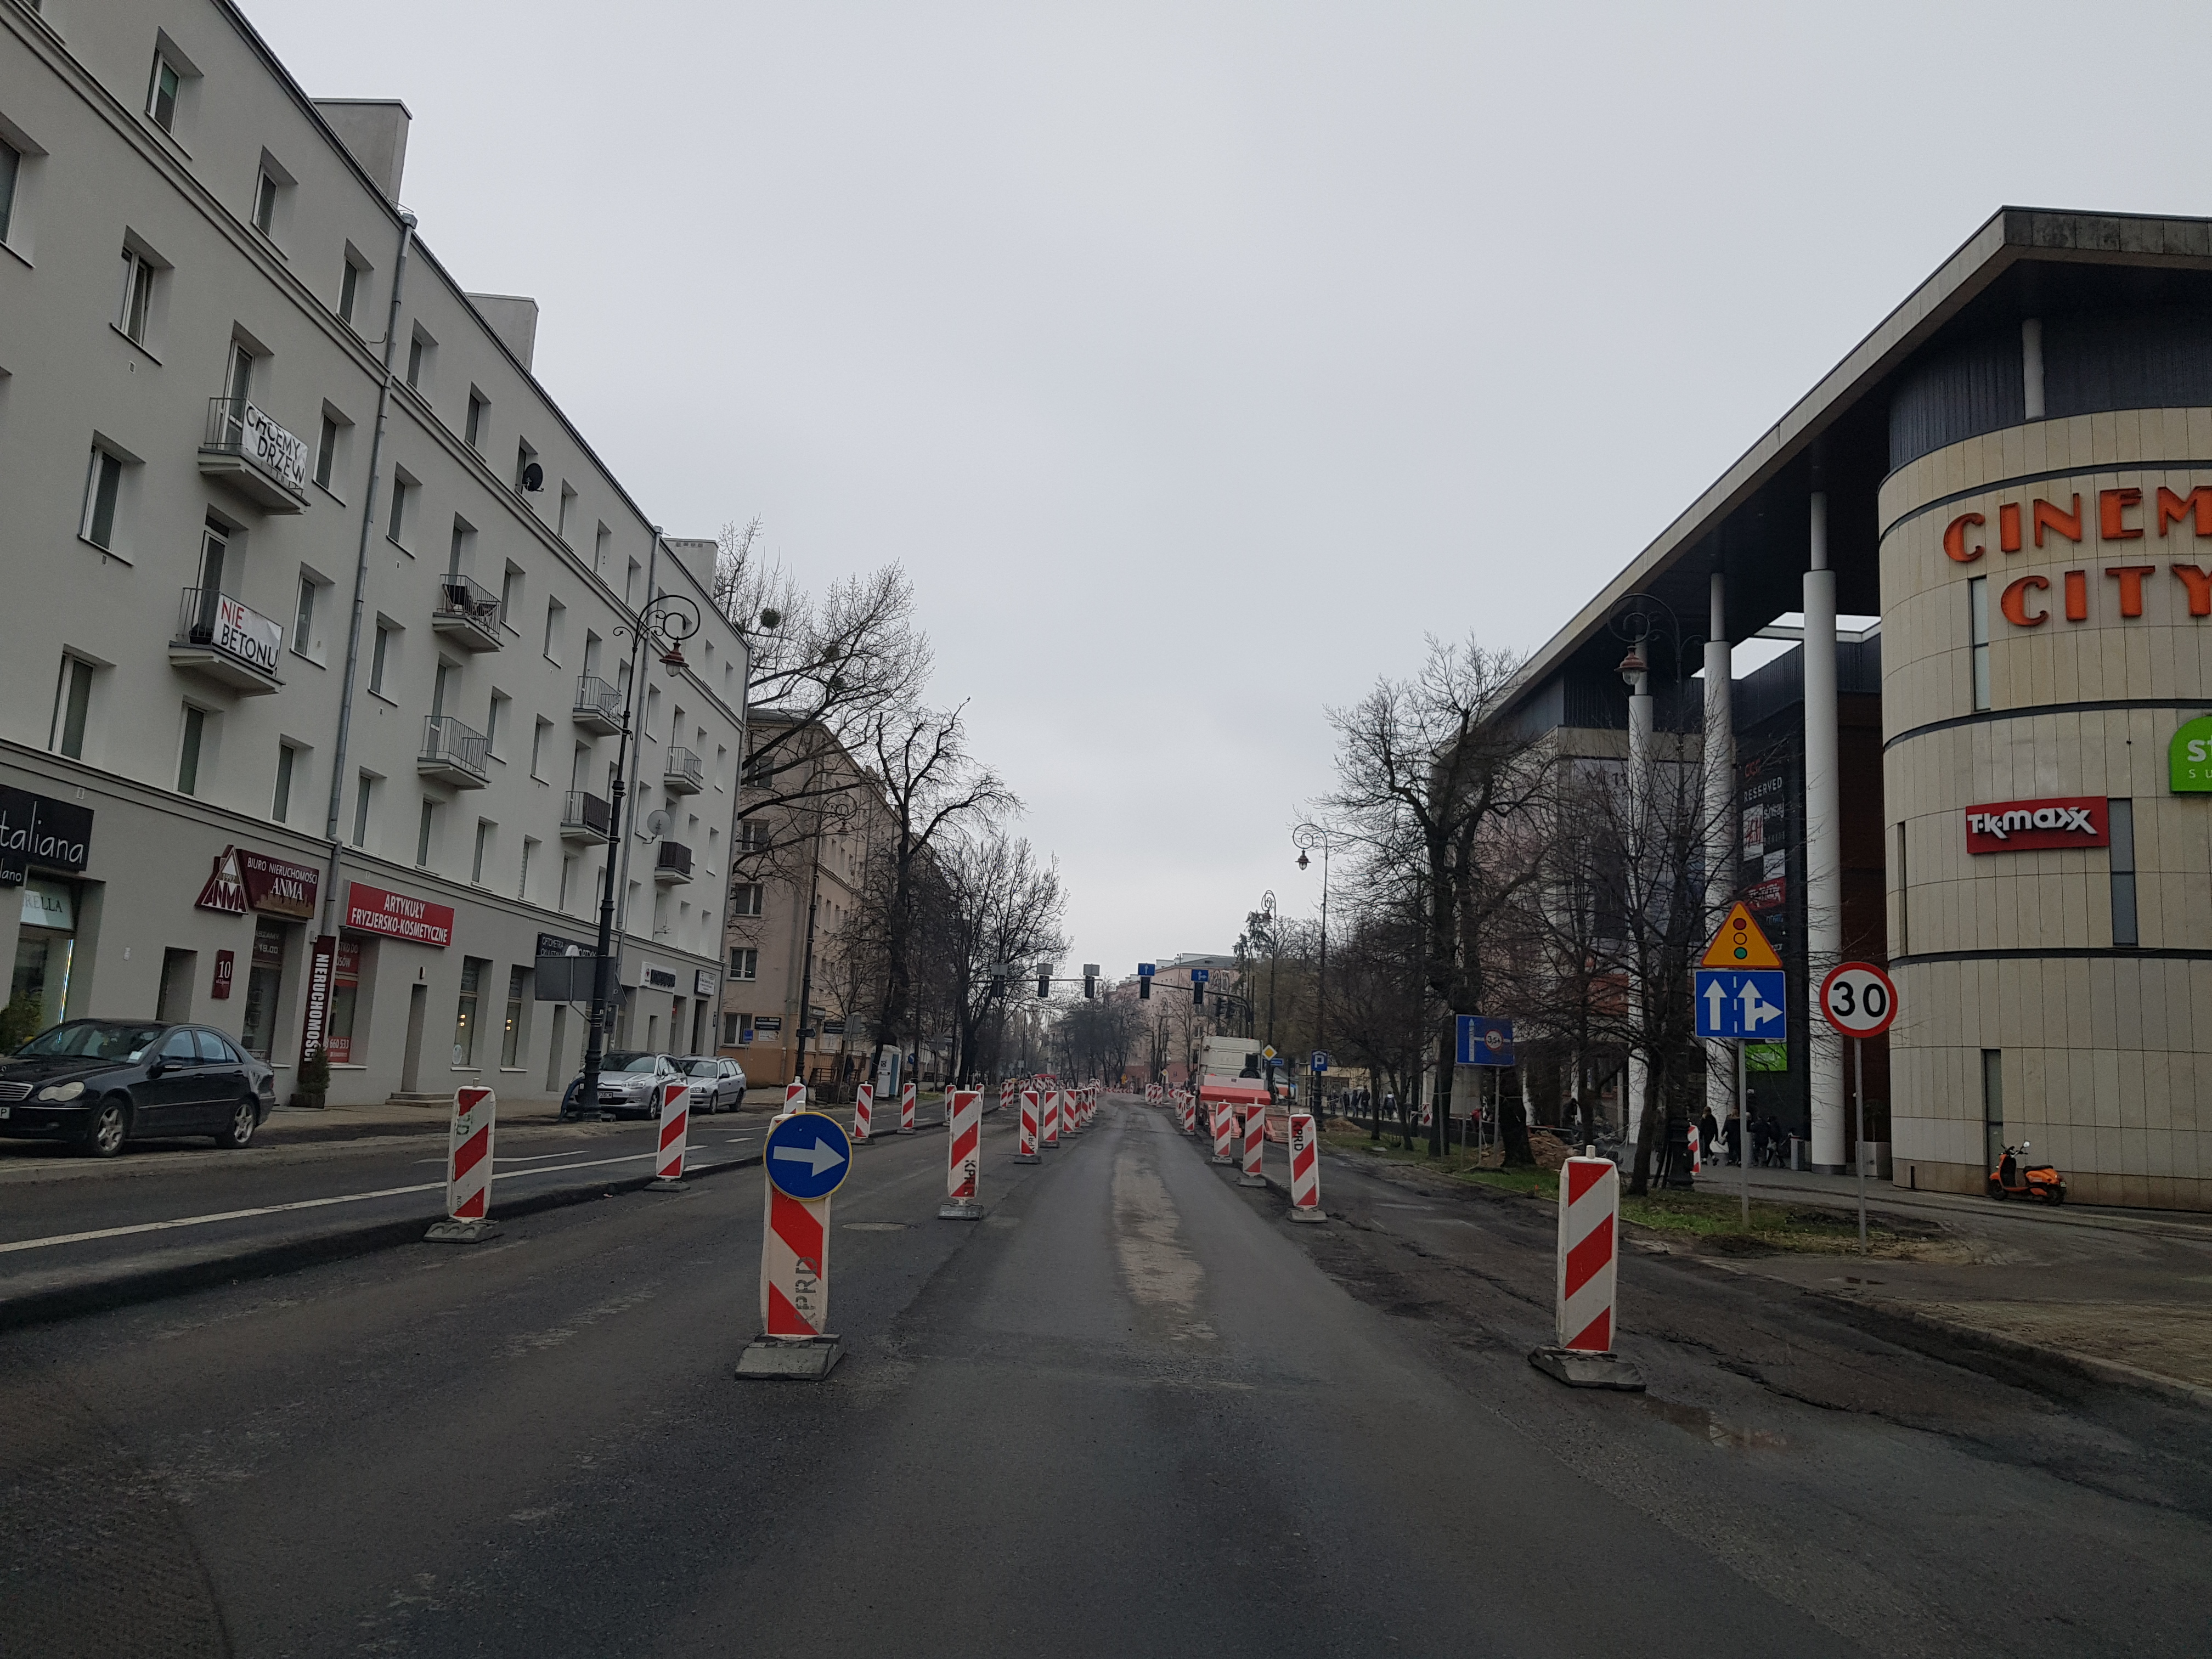 W poniedziałek przywrócony zostanie ruch na ul. Lipowej. Linie komunikacji miejskiej wracają na podstawowe trasy (zdjęcia)